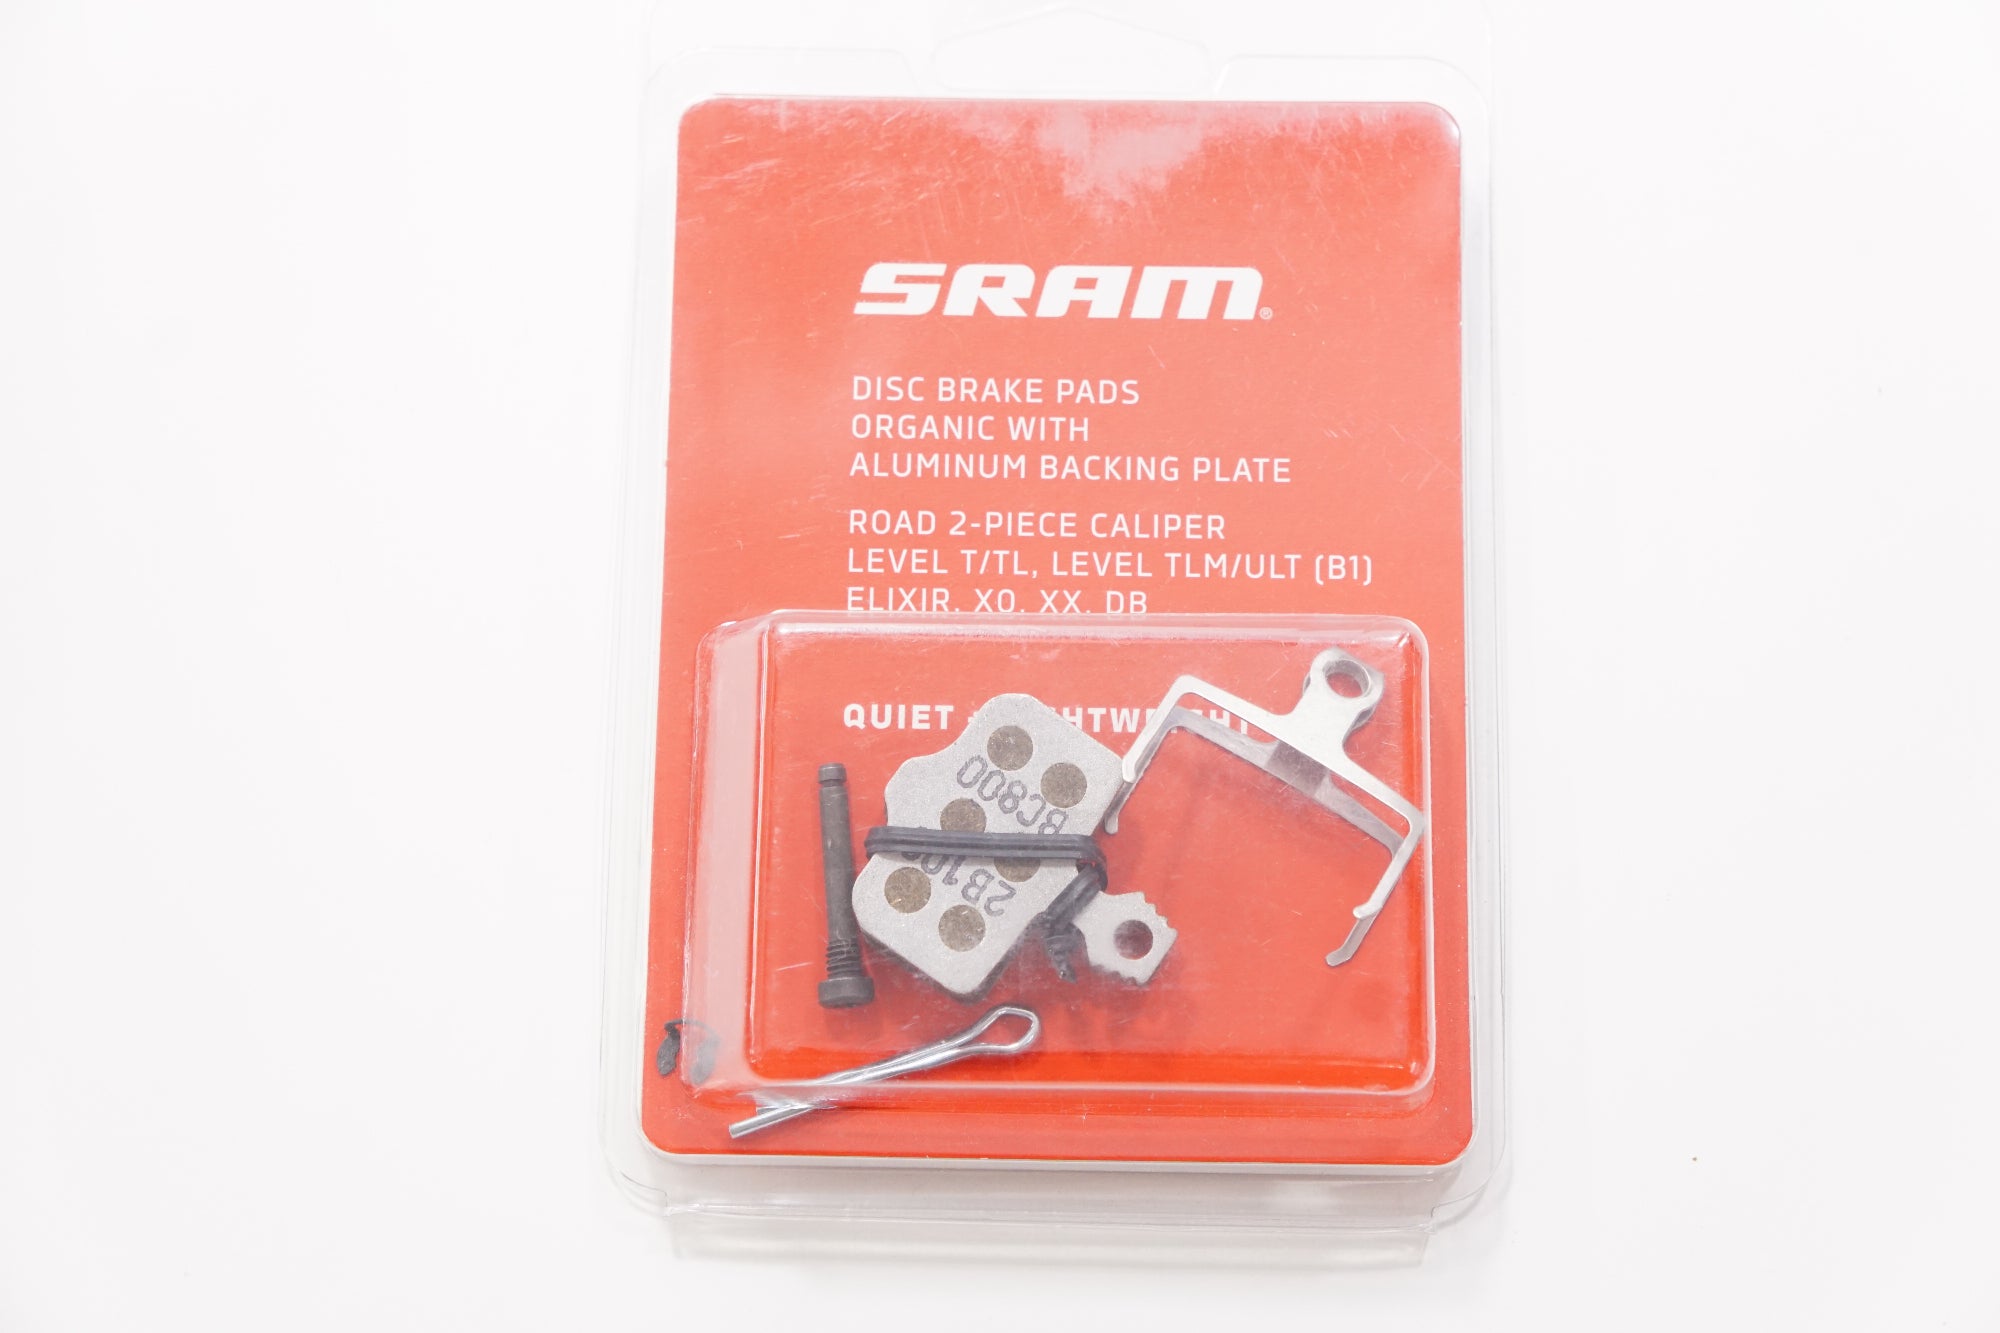 SRAM 「スラム」 DISK BRAKE PADS ROAD 2-PIECE CALIPER アルミニウム ディスクブレーキパッド / 浦和ベース